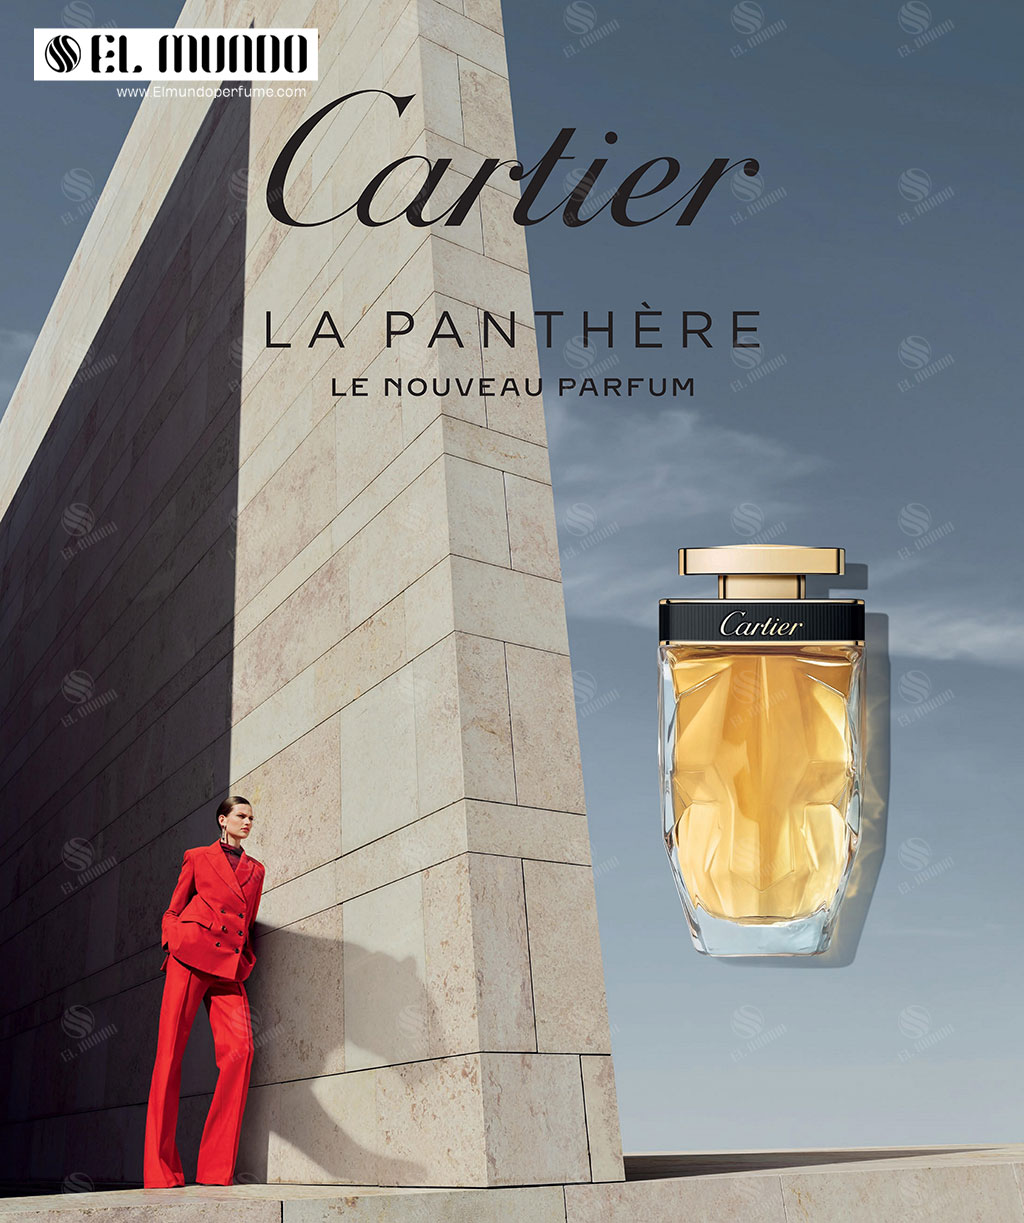 La Panthère Parfum Cartier for women 2020 - عطر کارتیر لا پانتیر پارفوم Cartier La Panthère Parfum 2020